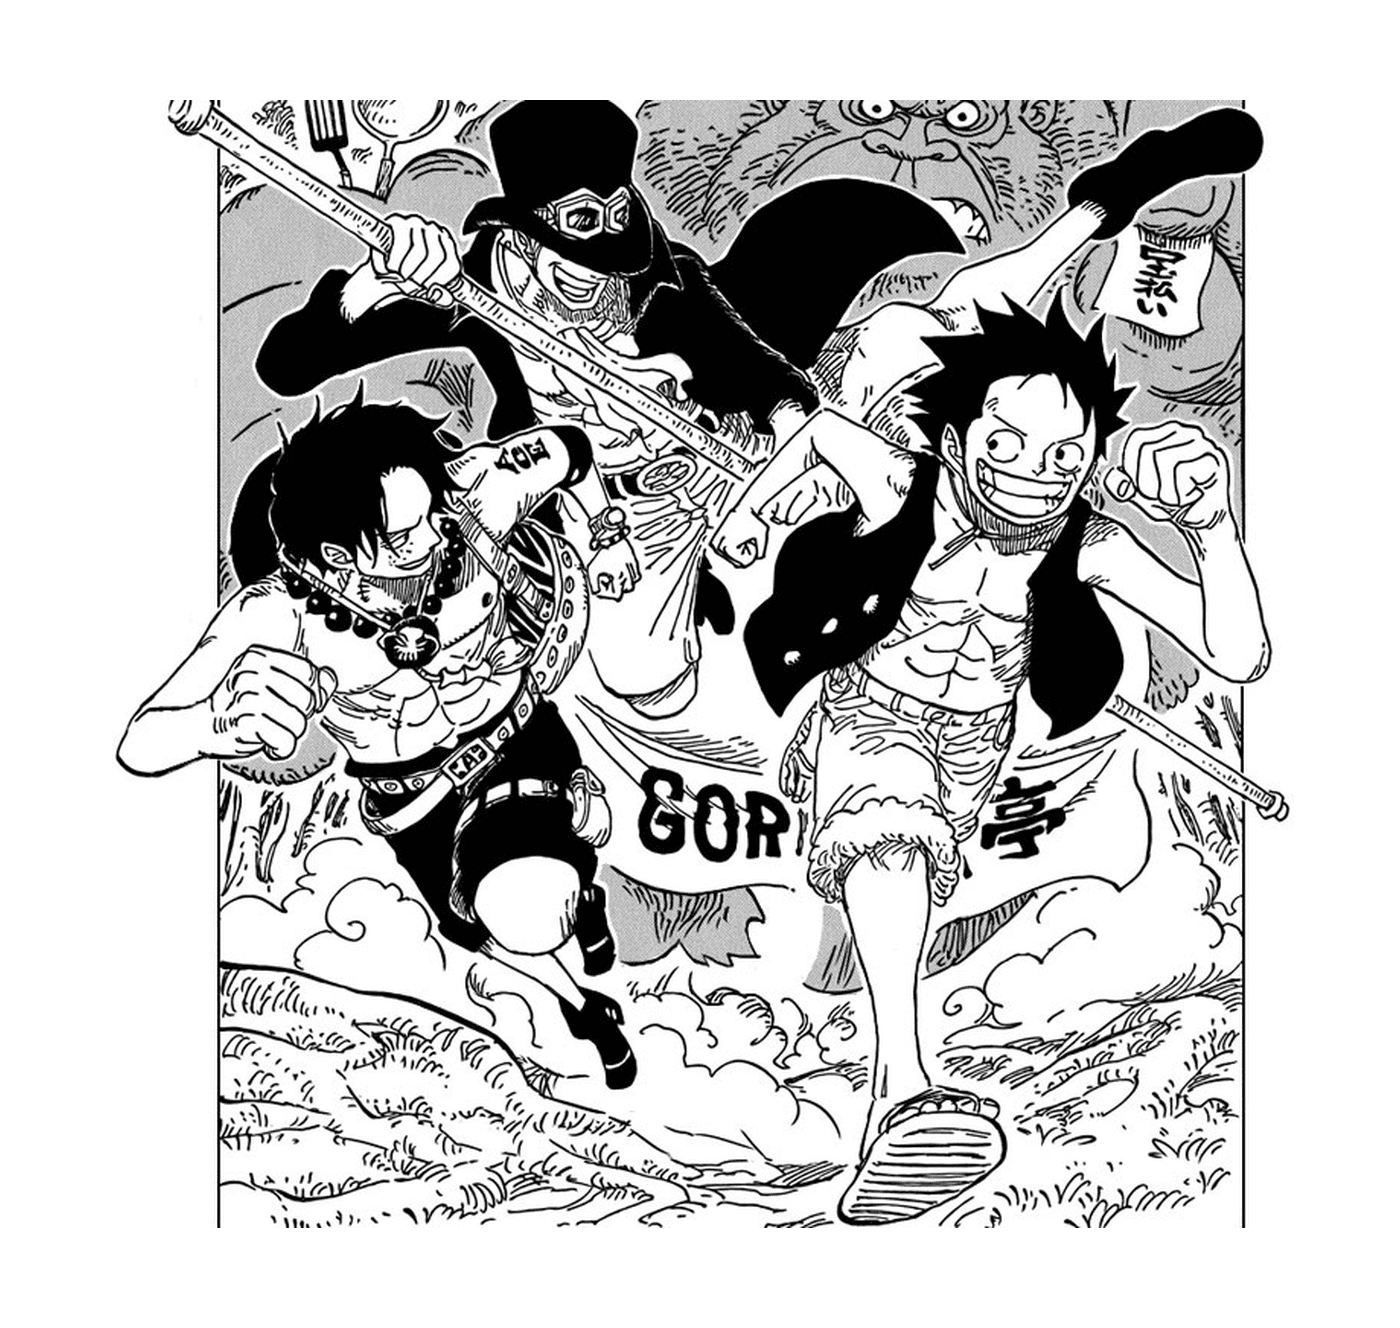  Manga One Piece, storia emozionante 